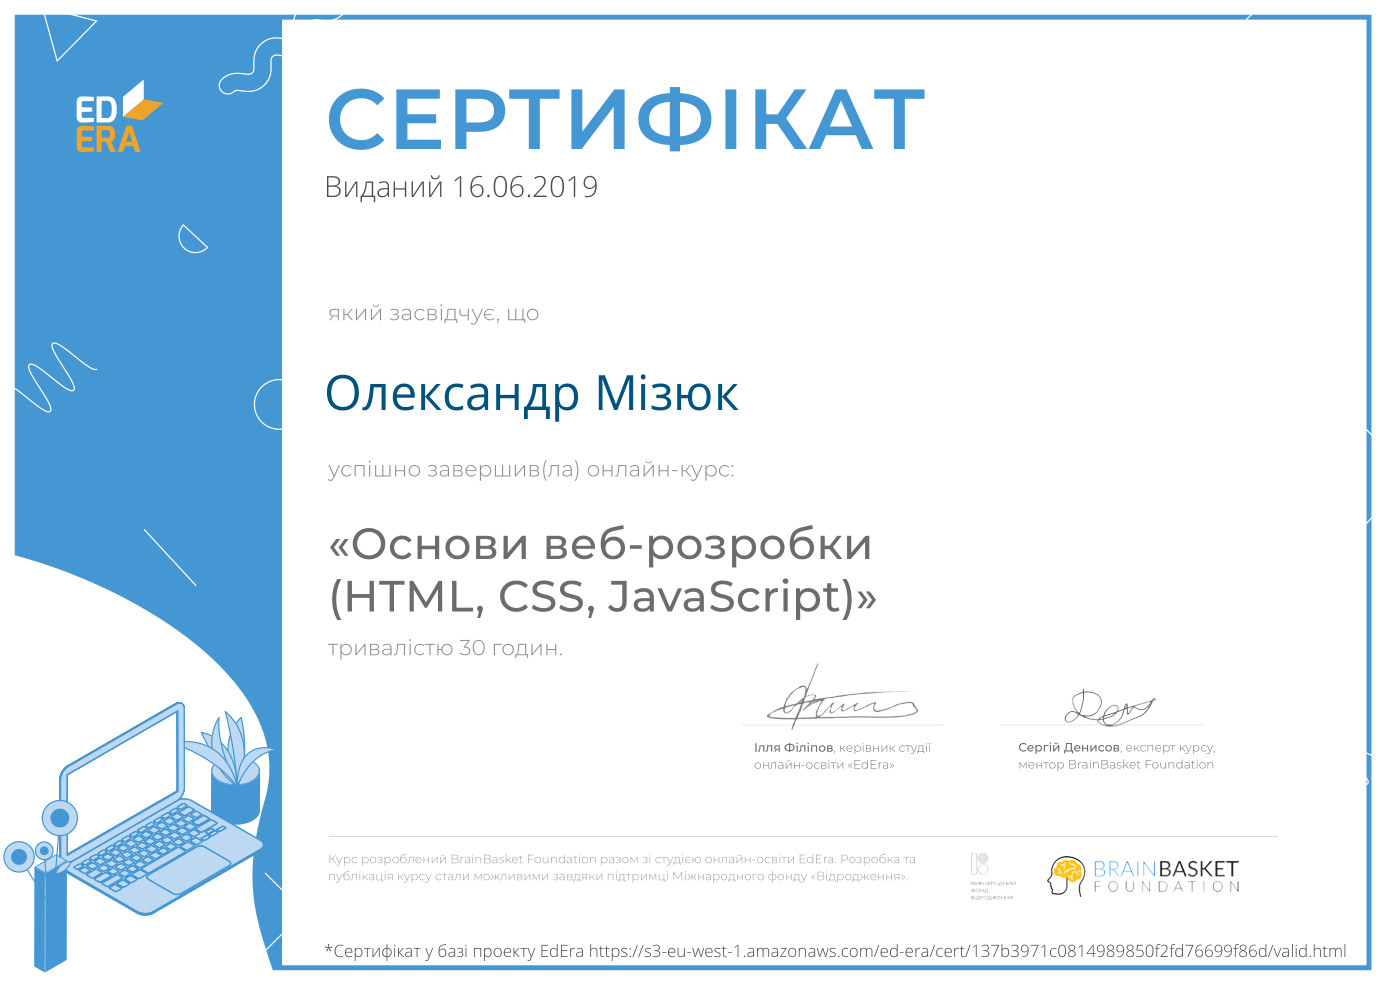 Сертифікат у базі проєкту EdEra про успішне закінчення онлайн-курсу "Основи веброзробки (HTML, CSS, JavaScript)" (30 годин)